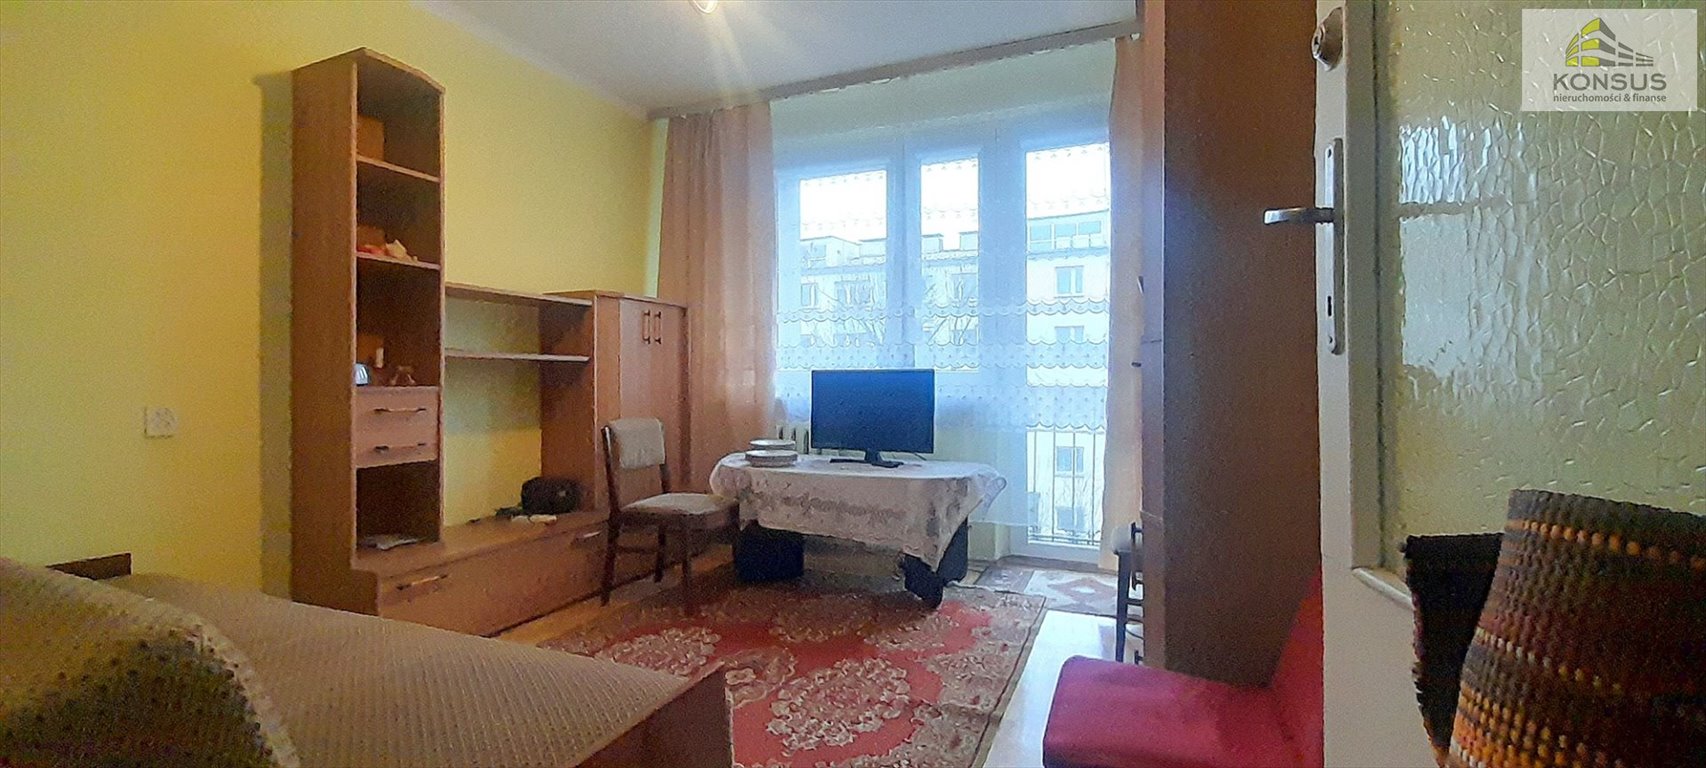 Mieszkanie trzypokojowe na sprzedaż Kielce, KSM, Mazurska  46m2 Foto 2